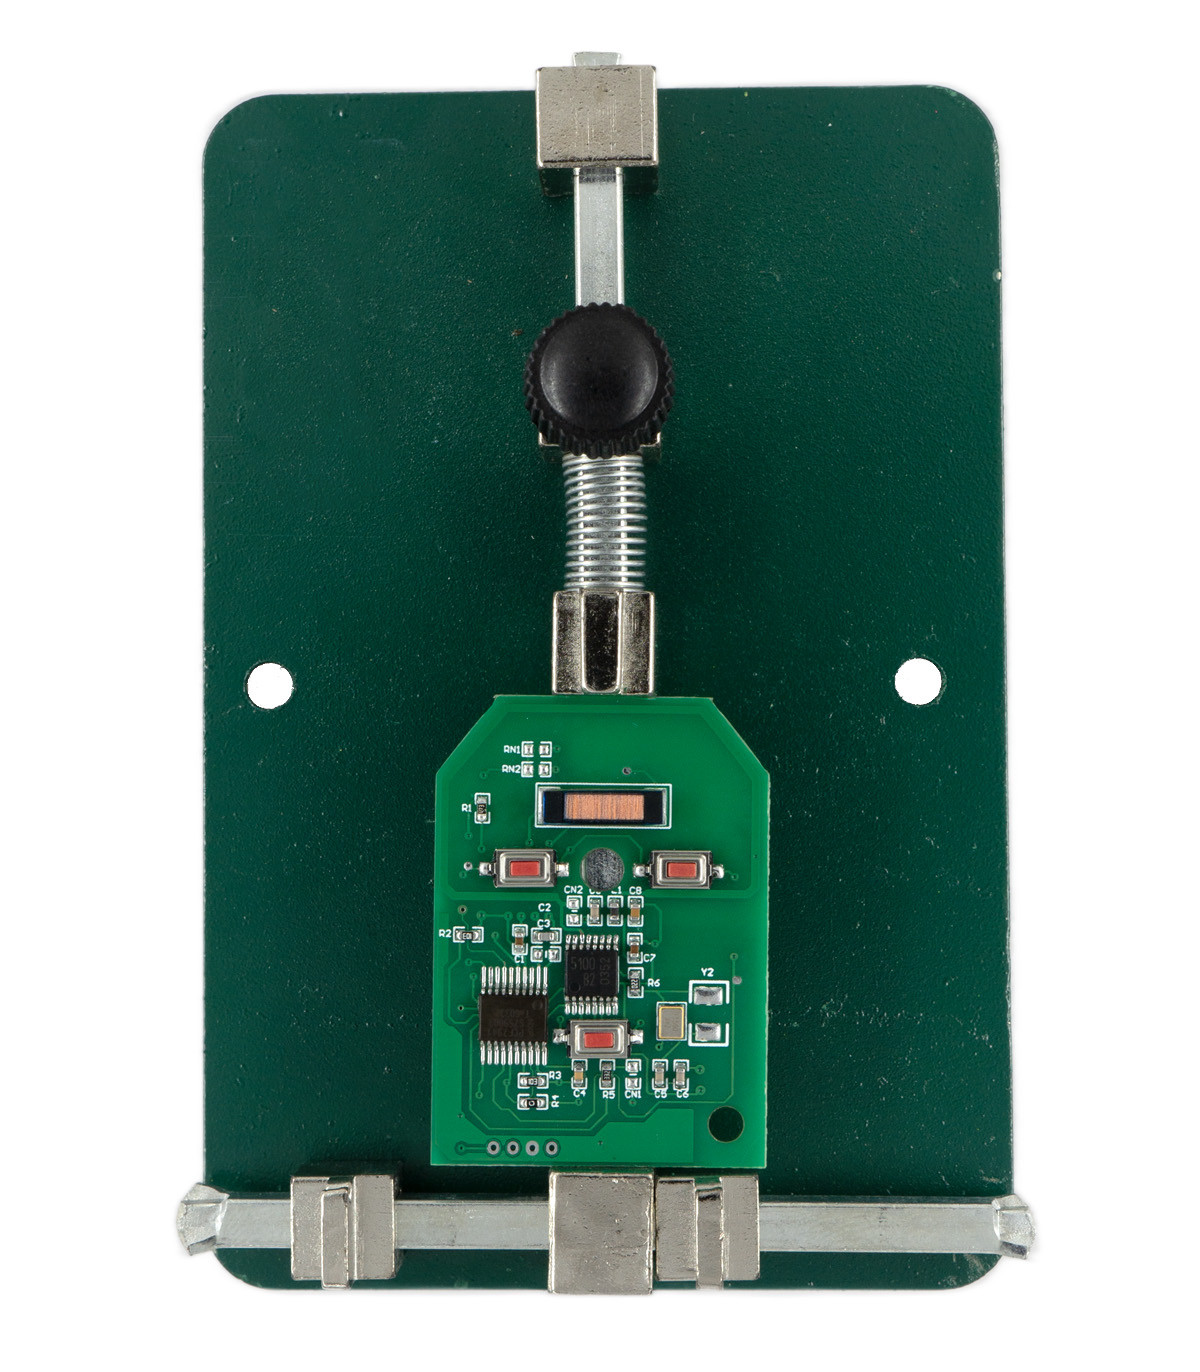 Support de circuit imprimé pour microsoudure - Support PCB